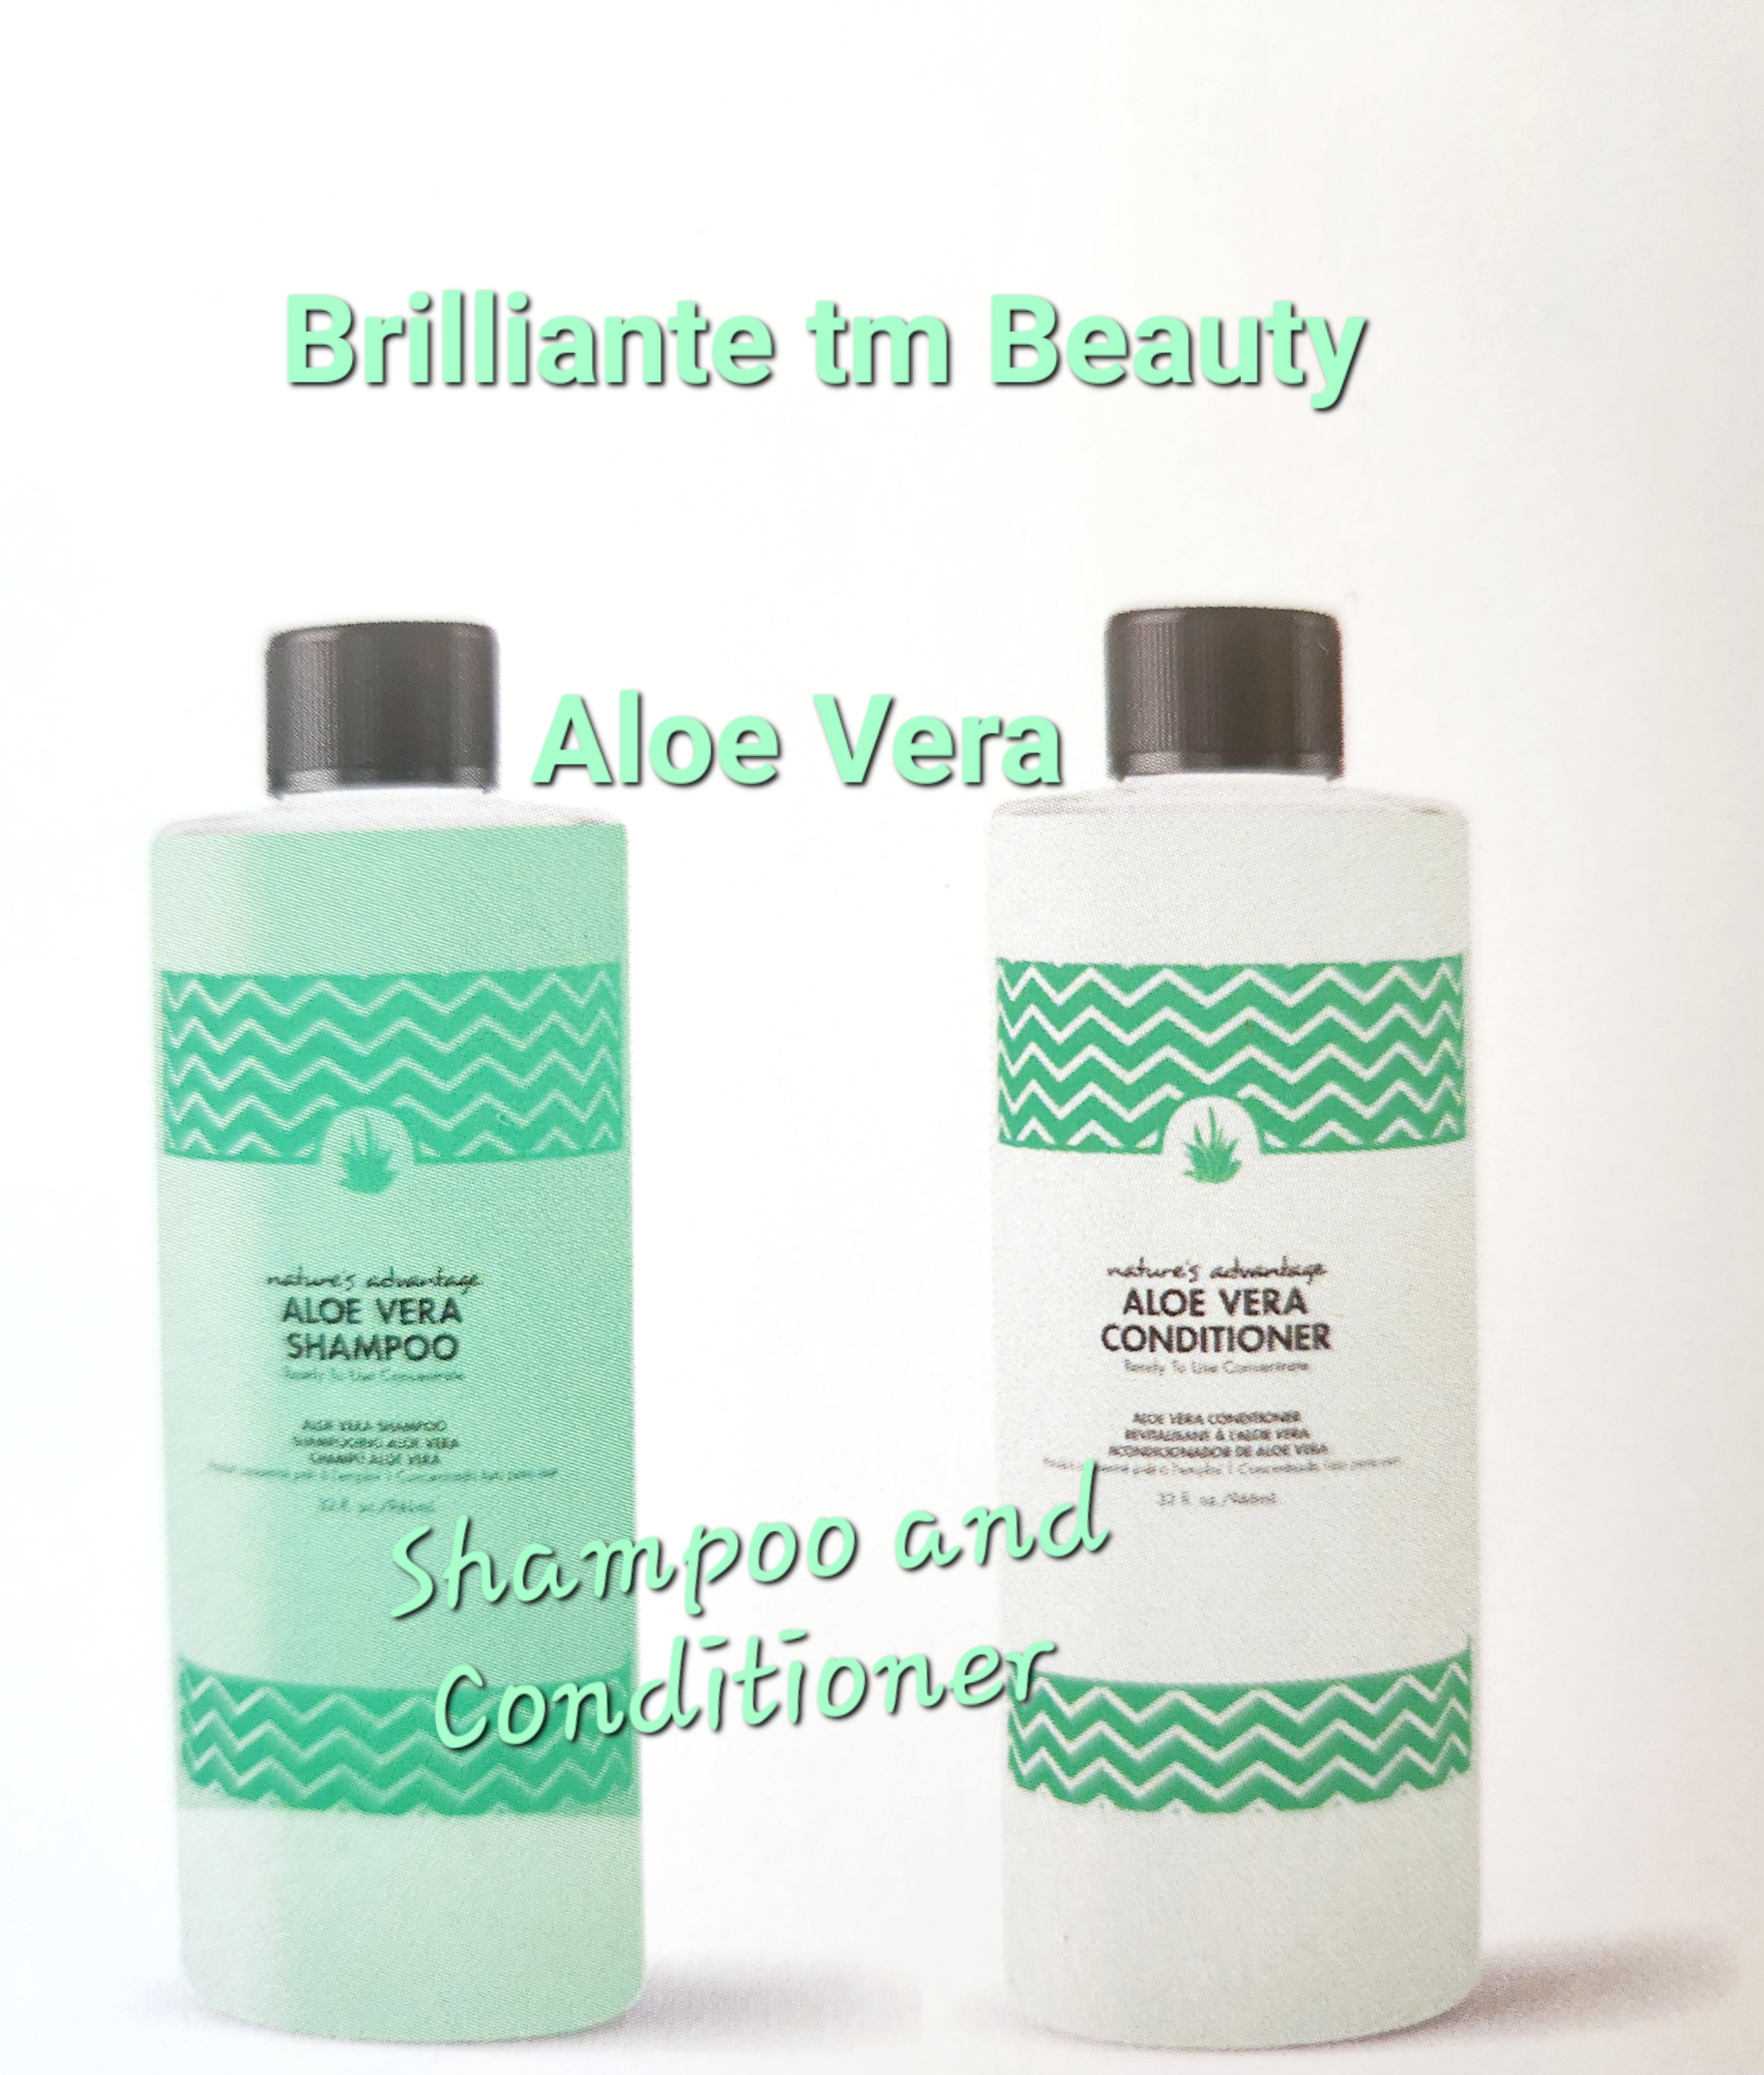 Polly Products Brilliante tm Beauty 32 Ounce /QUART Aloe Vera #Shampoo-32/AV and #Conditioner-32/AV